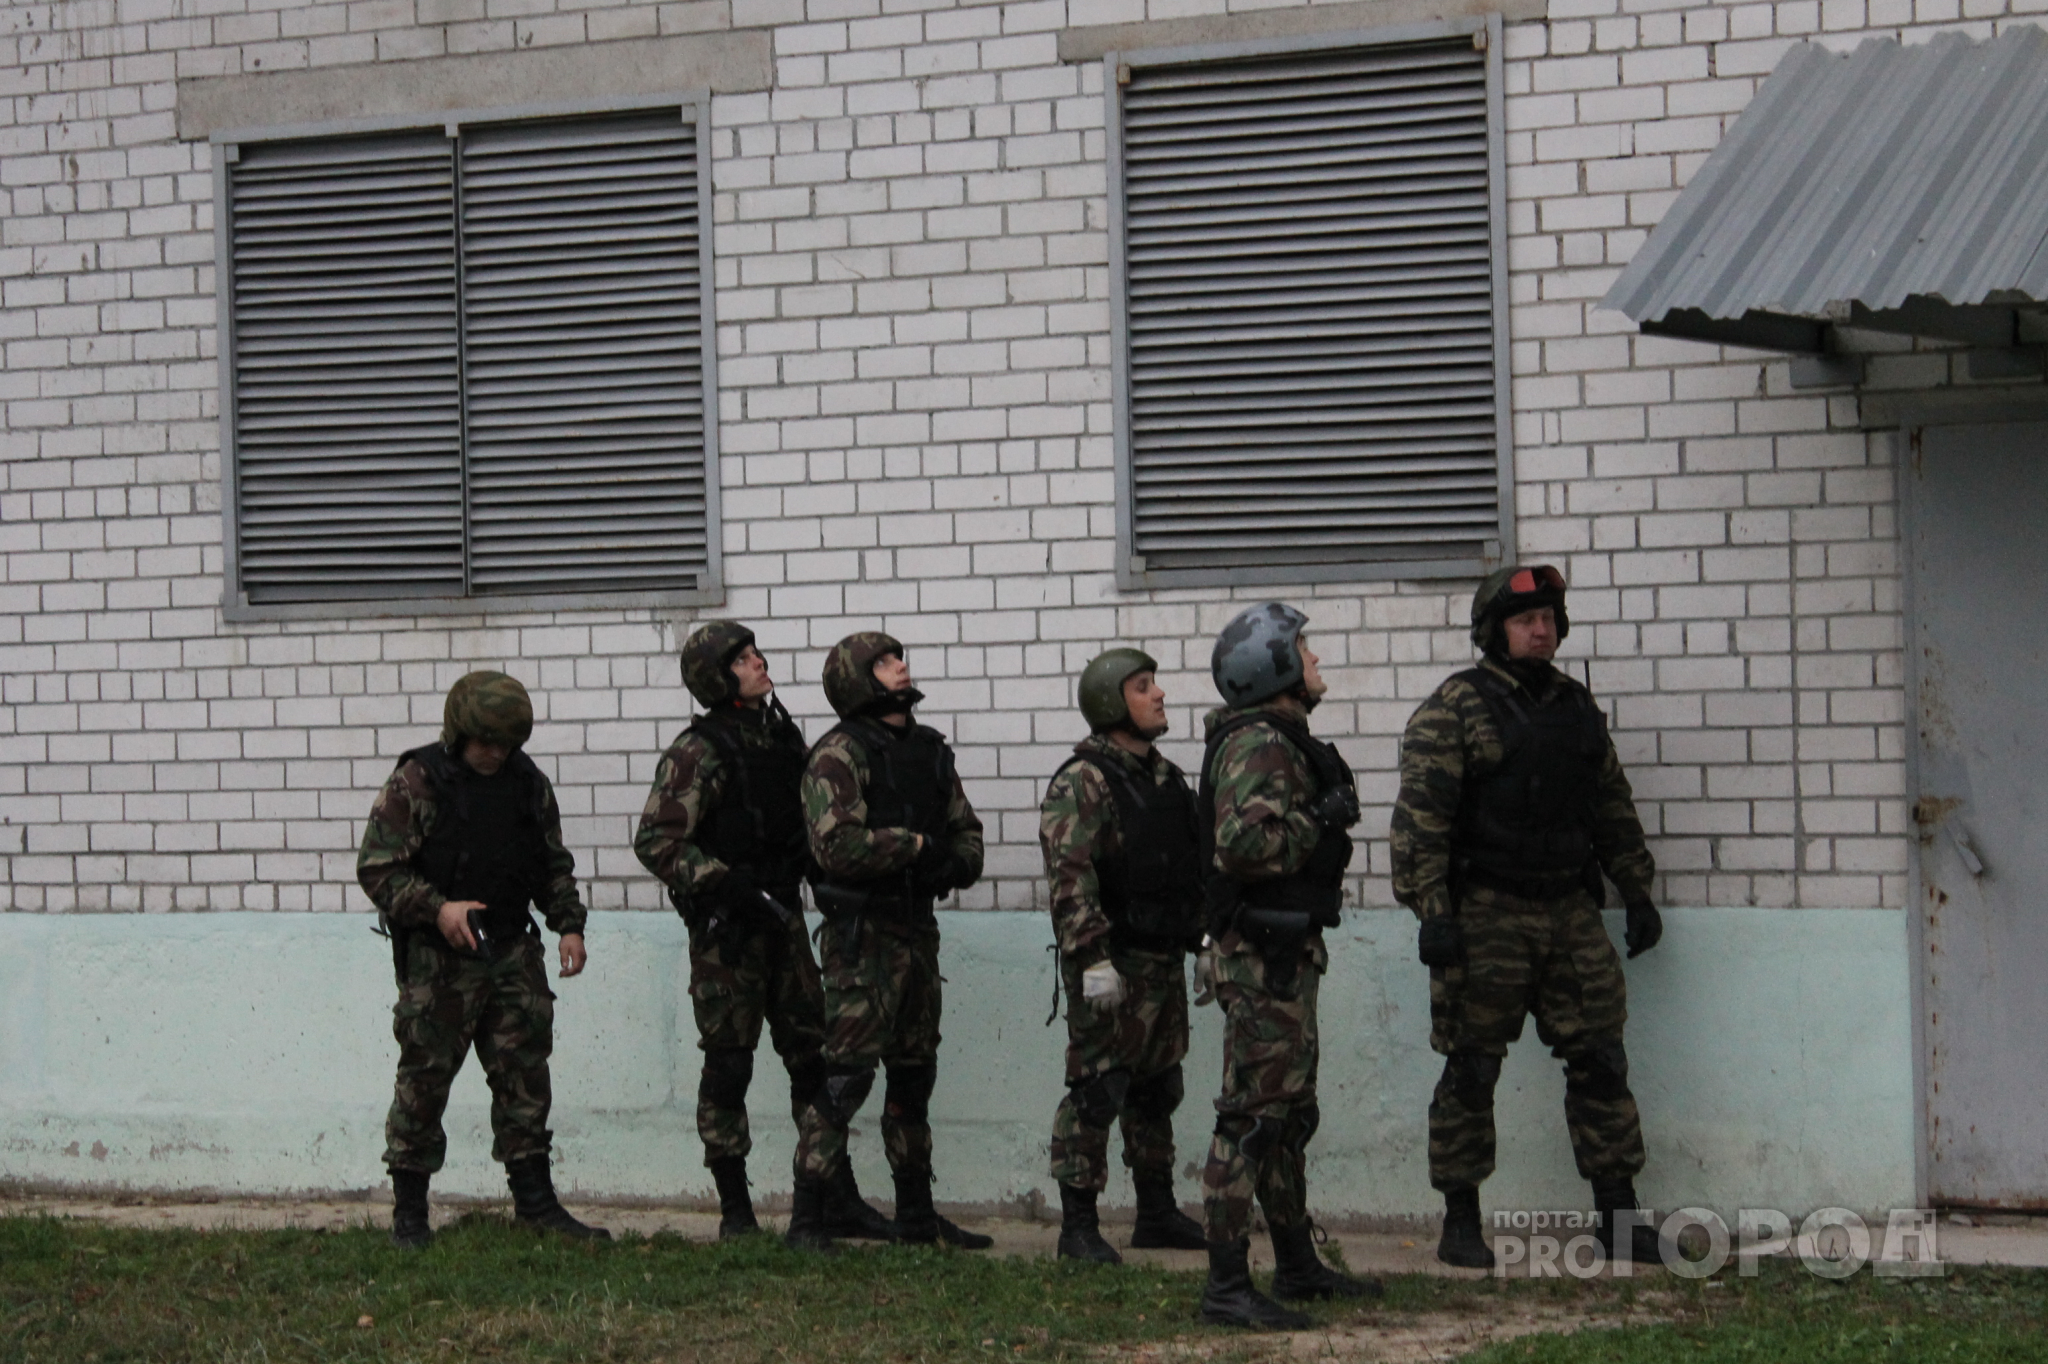 СМИ: в день задержания директора фонда капремонта силовики побывали в РСУ №1